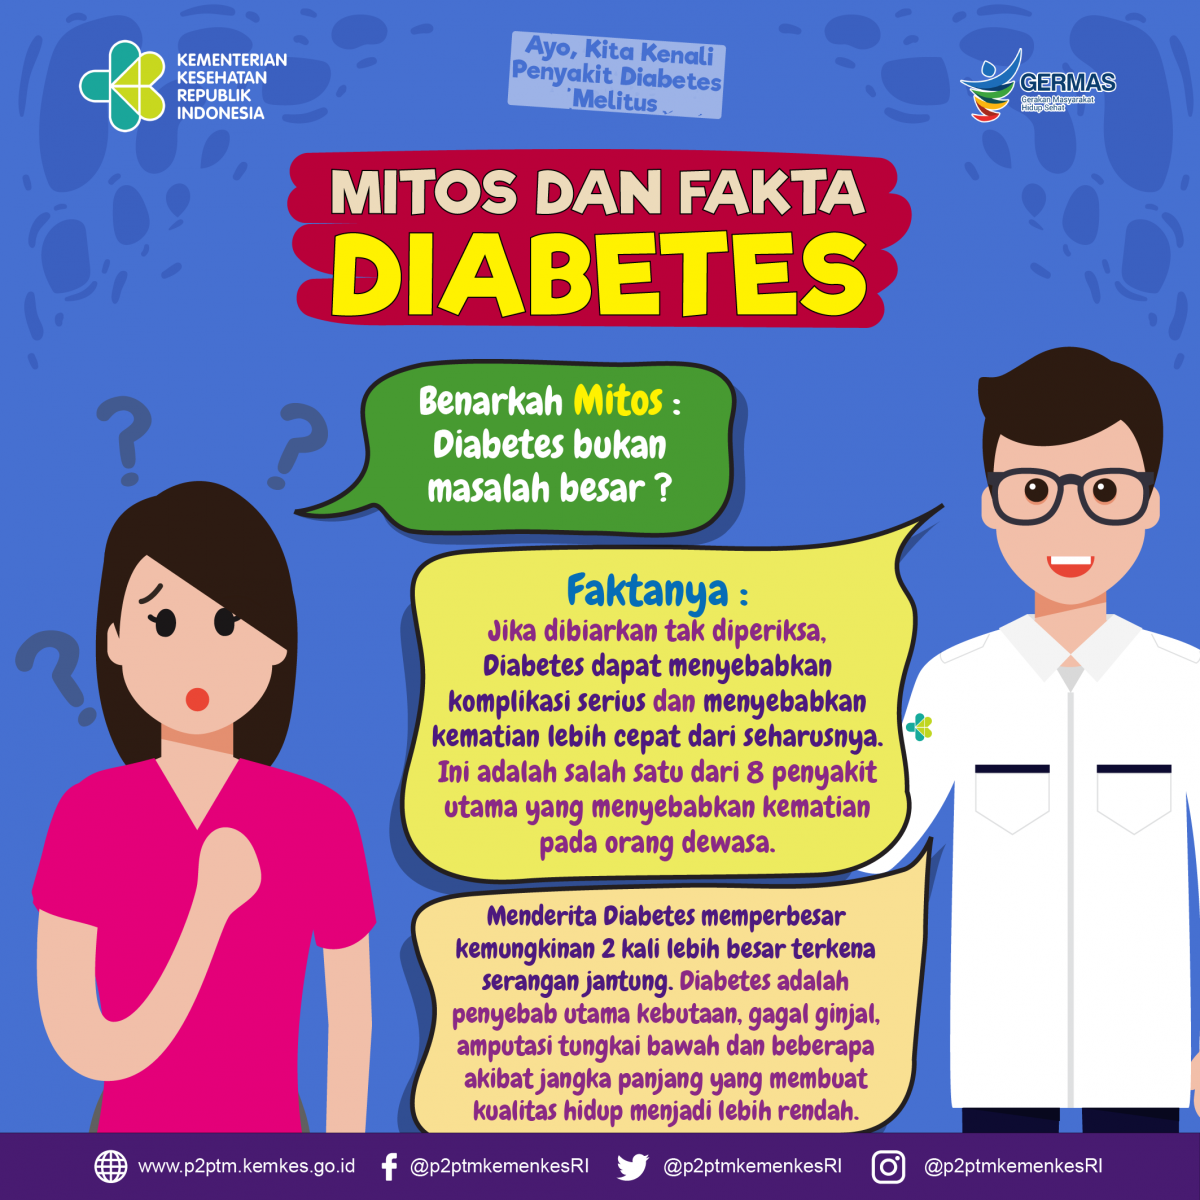 Benarkah mitos bahwa Diabetes bukan masalah besar ?